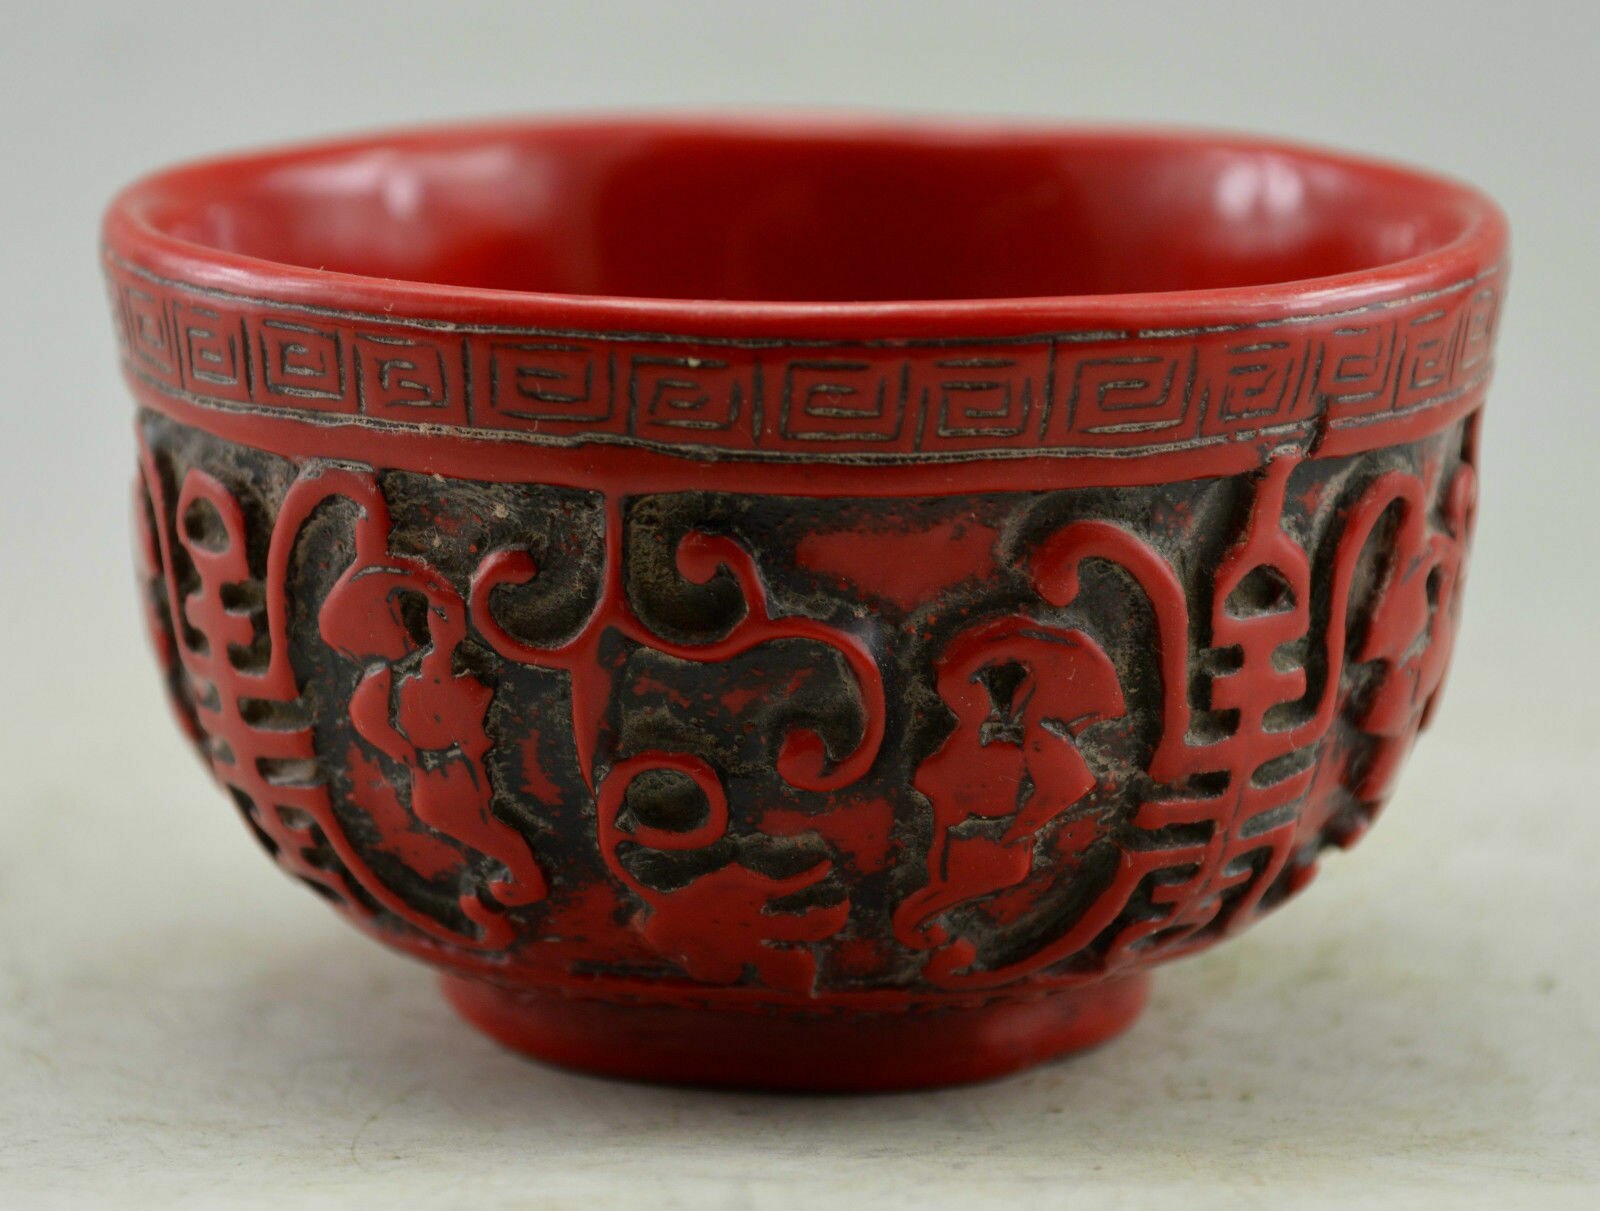 Chinese Rode Koraal Gesneden Druif Figuur Kom-Fu Foo Levensduur Betekenis Standbeelden Voor Decoratie Home Decor Collectie Ornamenten